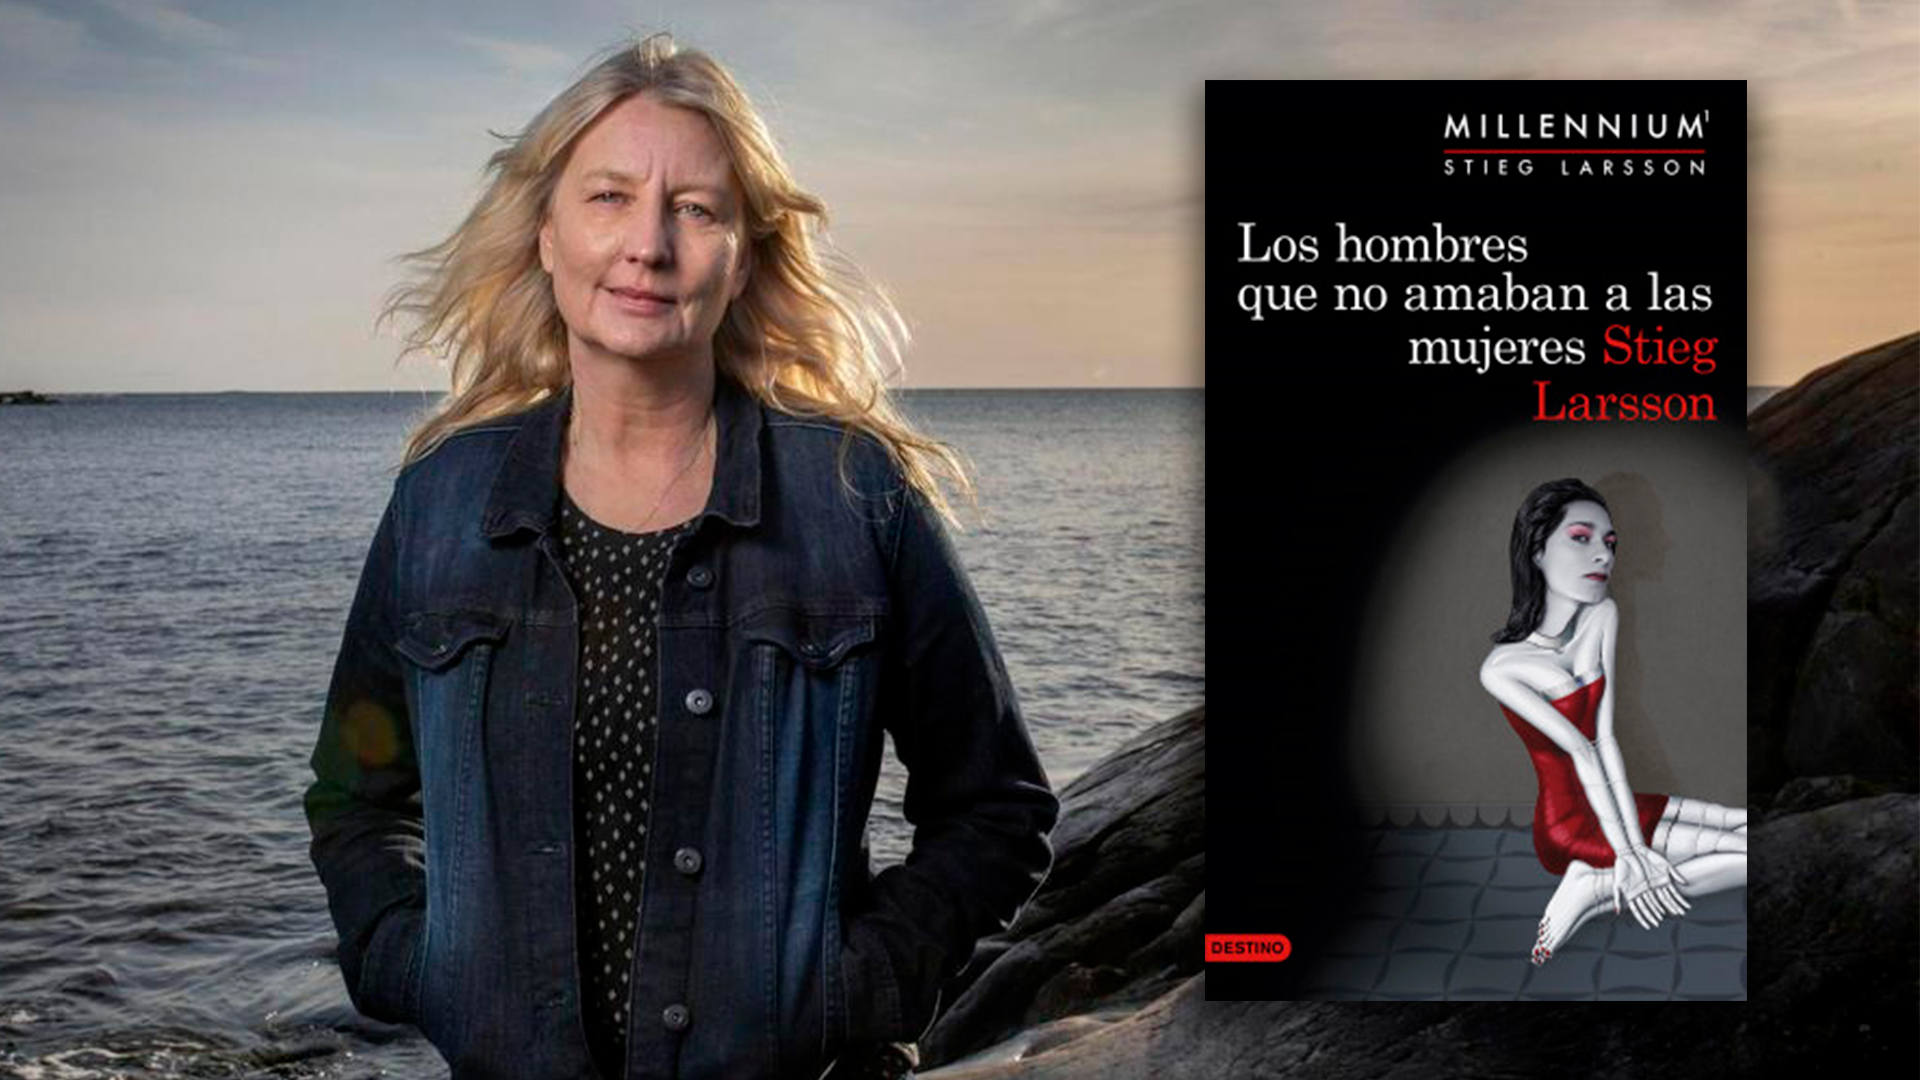 La saga “Millennium” de Stieg Larsson tendrá un nuevo libro en noviembre: por primera vez será escrita por una mujer